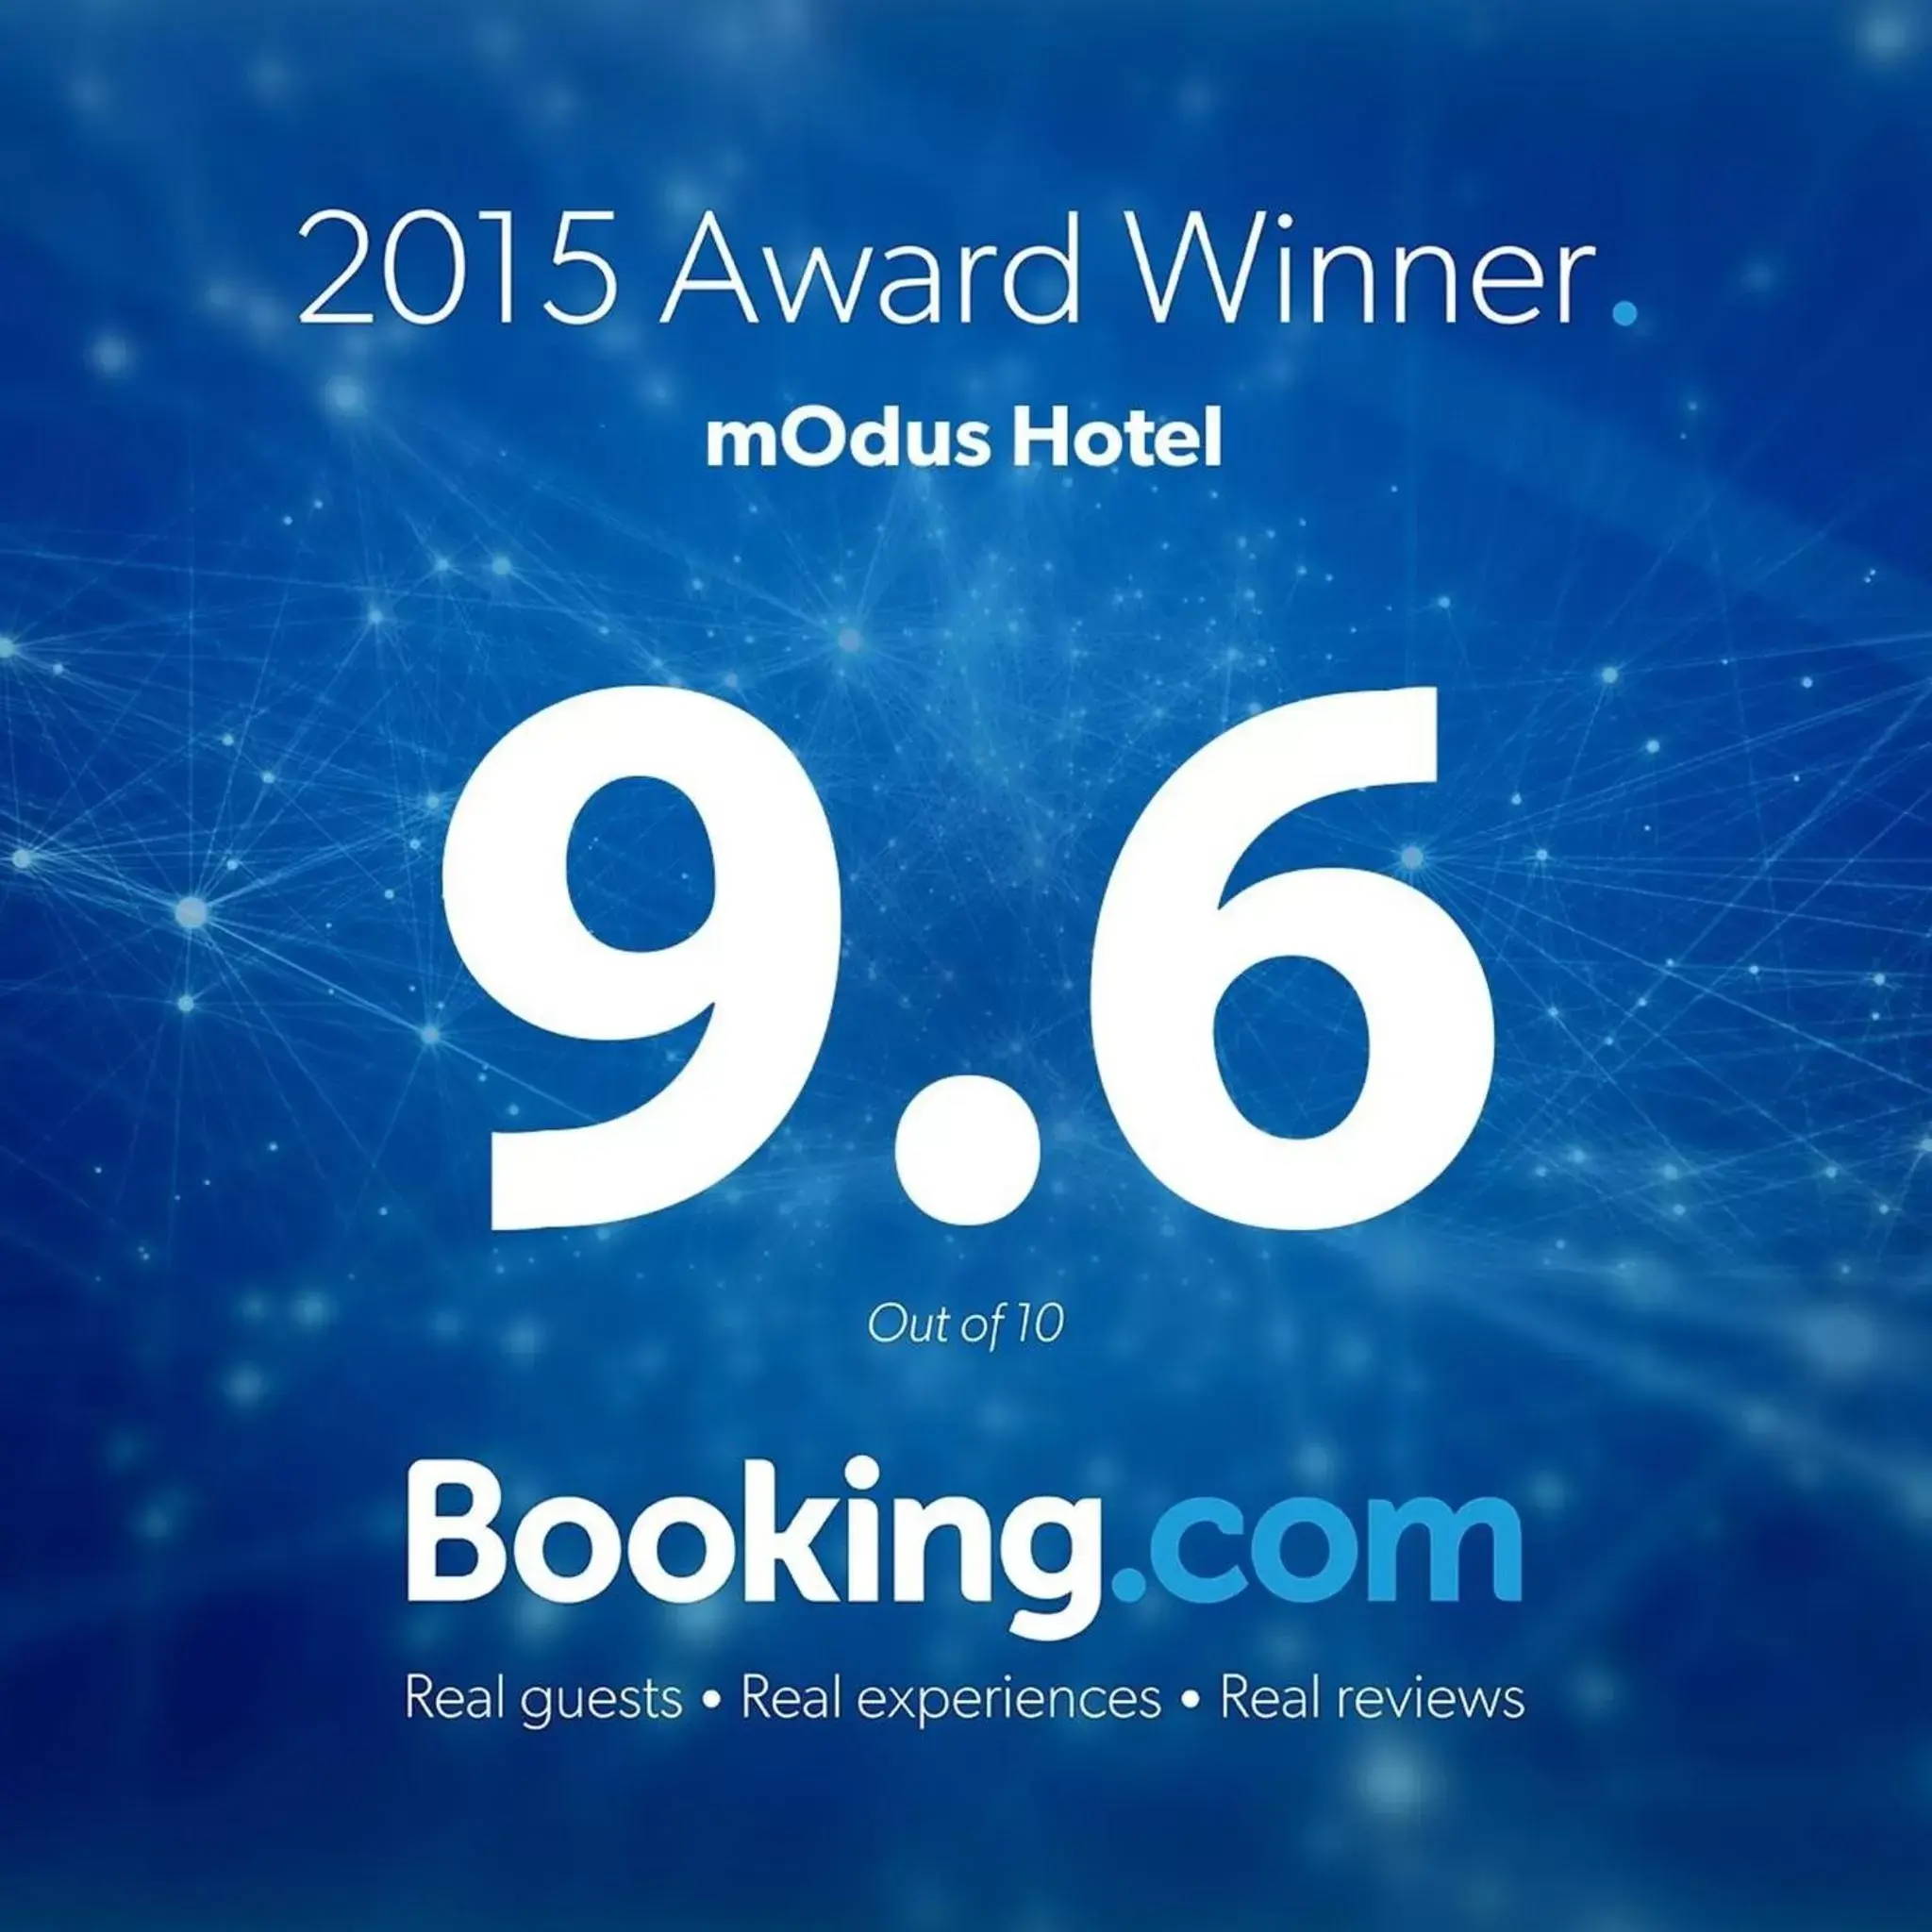 Certificate/Award in mOdus Hotel